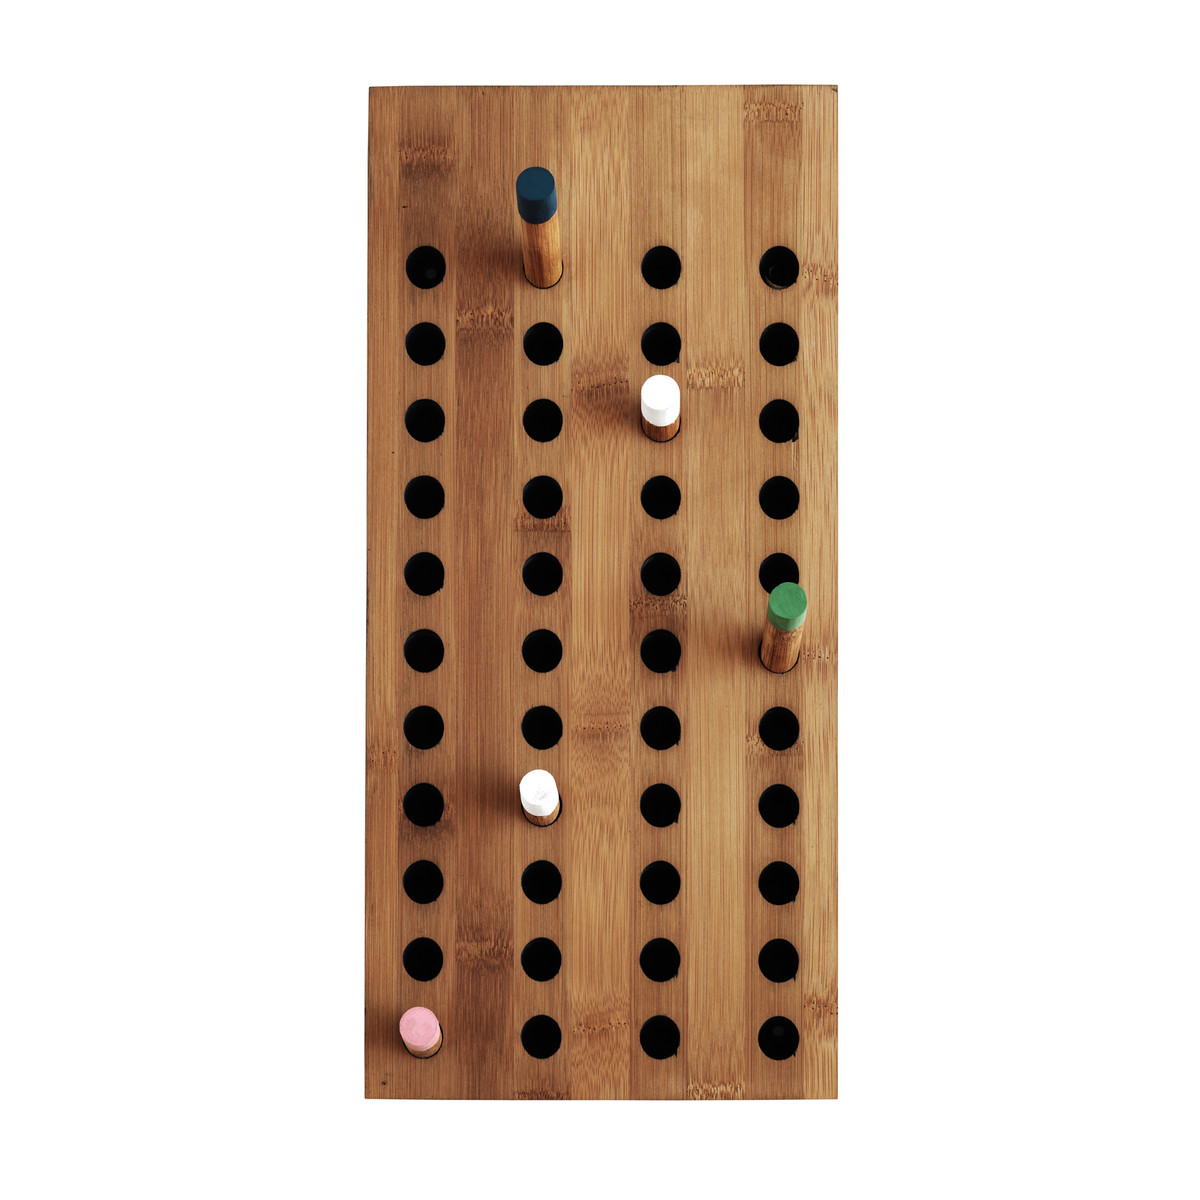 We Do Wood - Scoreboard Coat Rack